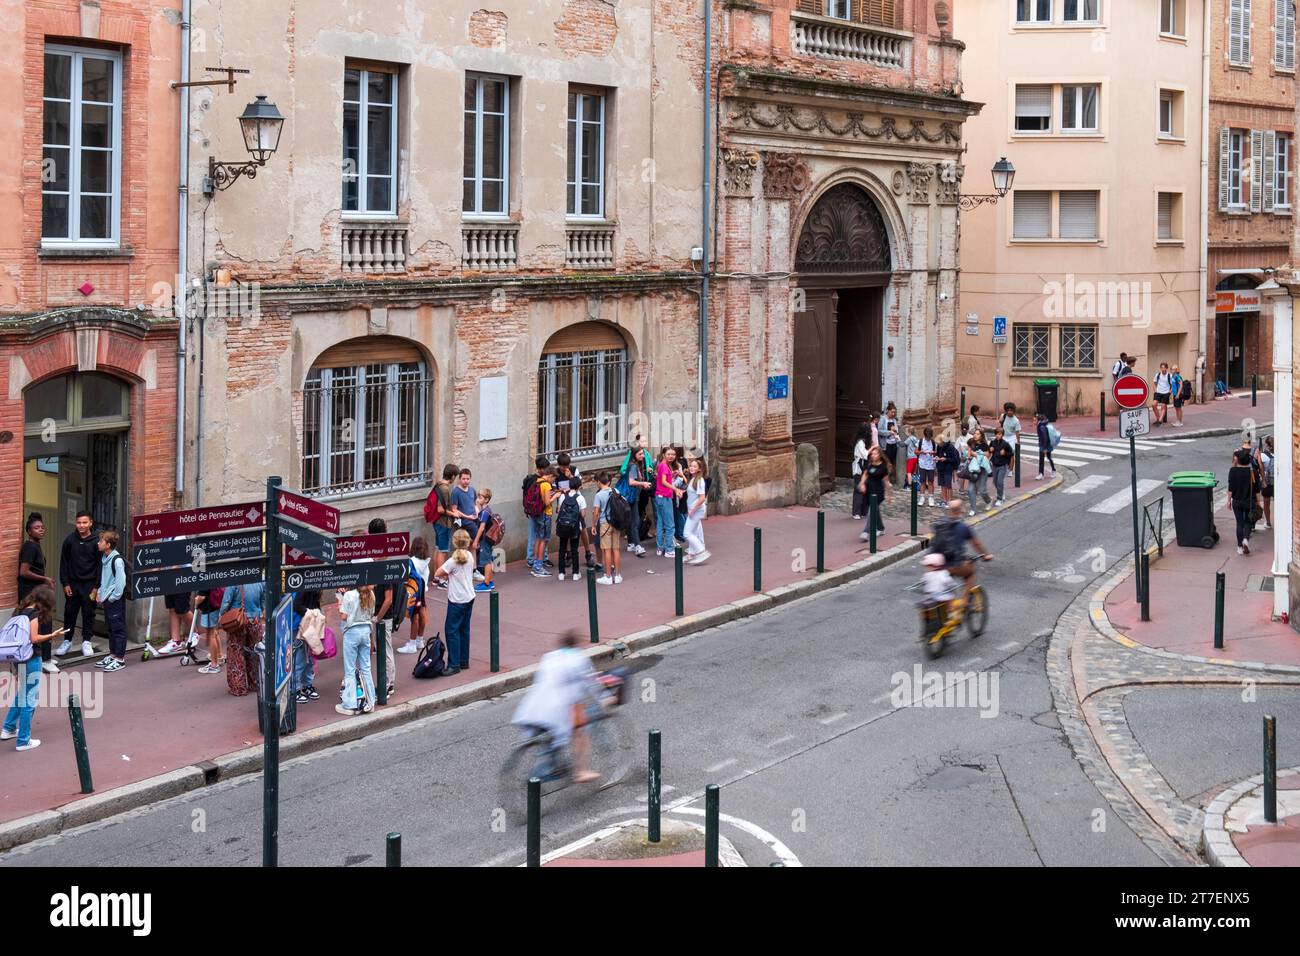 Bambini e adolescenti vengono lasciati fuori dalla scuola, Tolosa, Francia Foto Stock